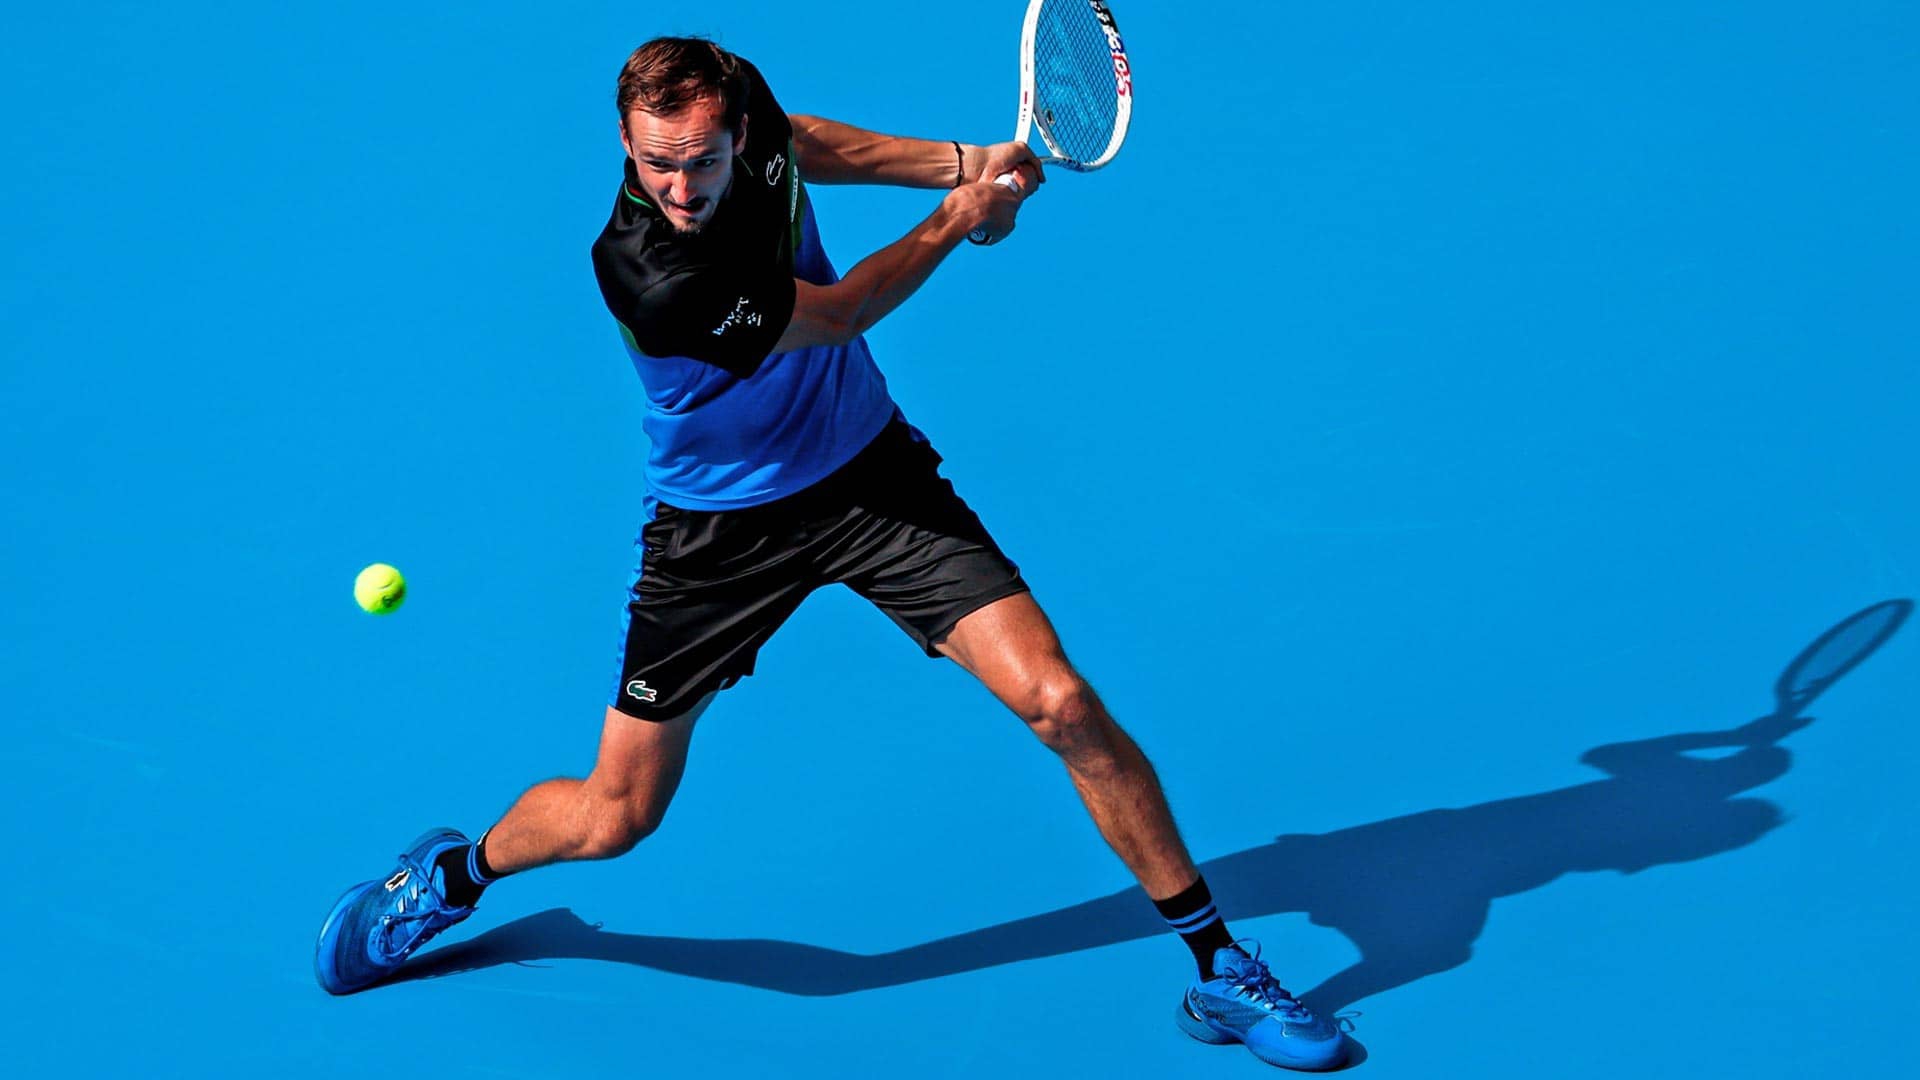 Тенис показно: Медведев даде само 3 гейма на шампион от Laver Cup за успешн старт в Пекин